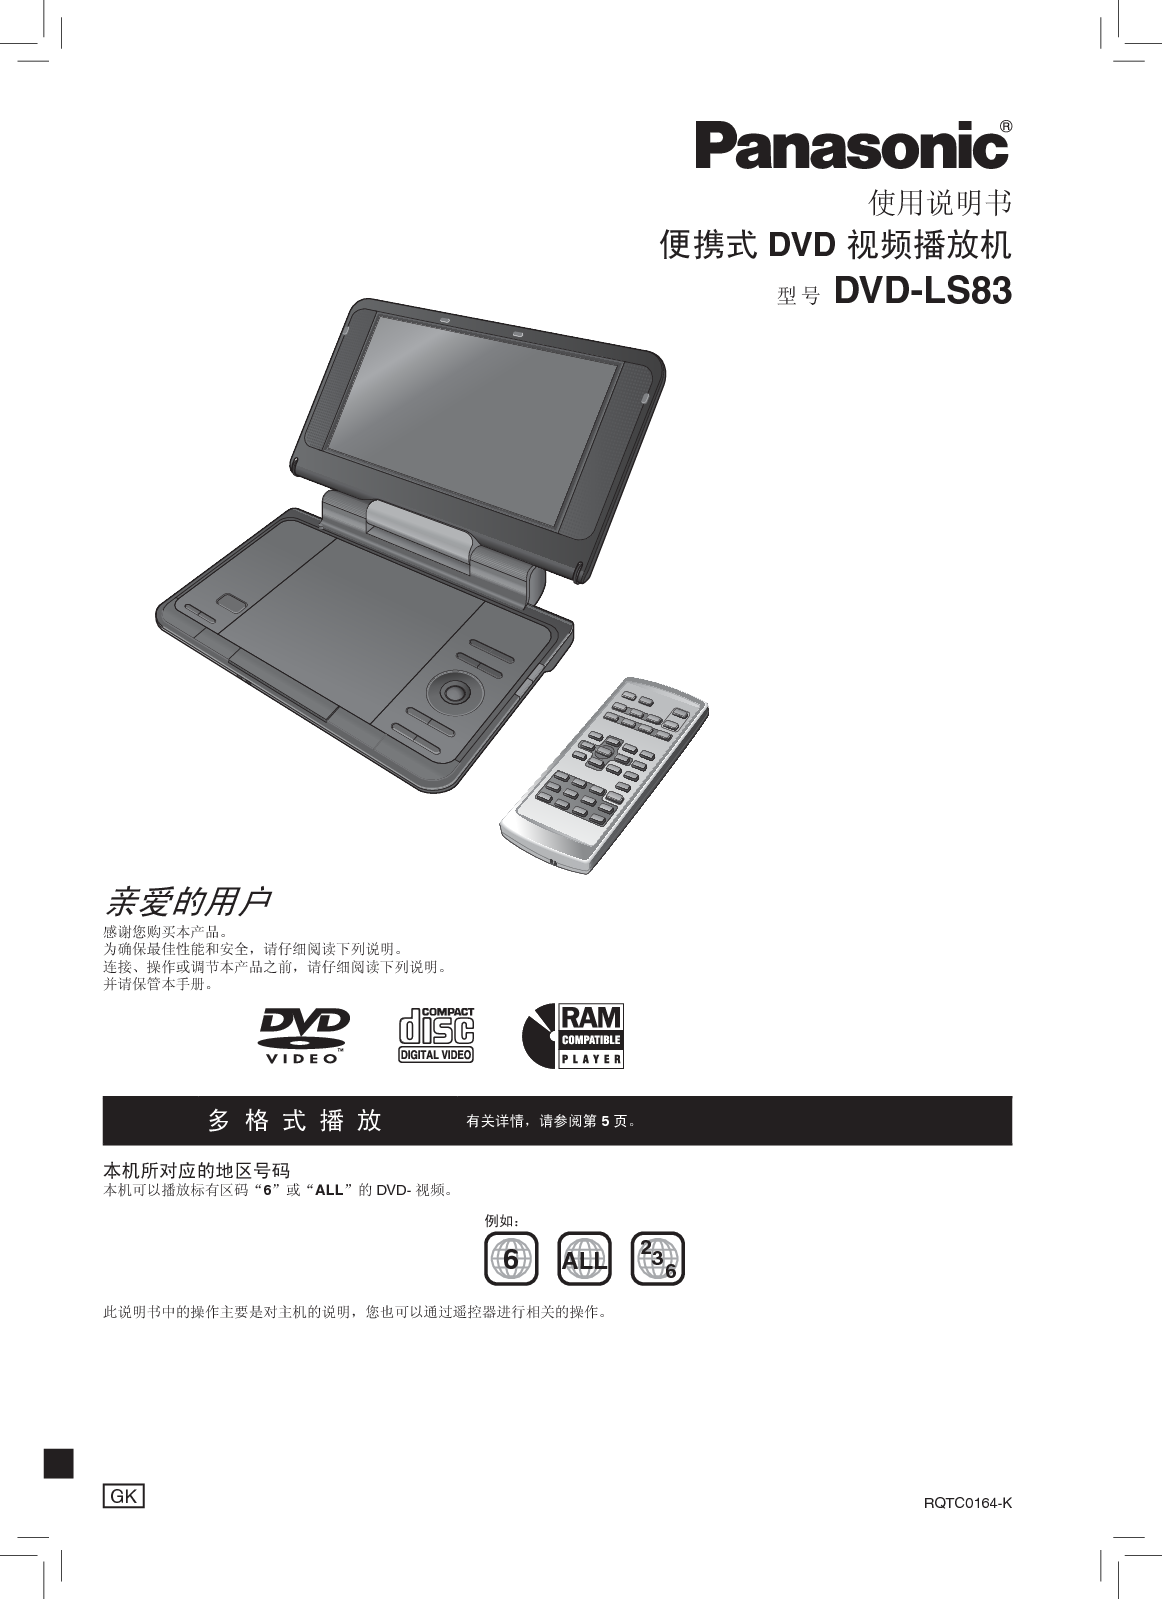 松下 Panasonic DVD-LS83 说明书 封面